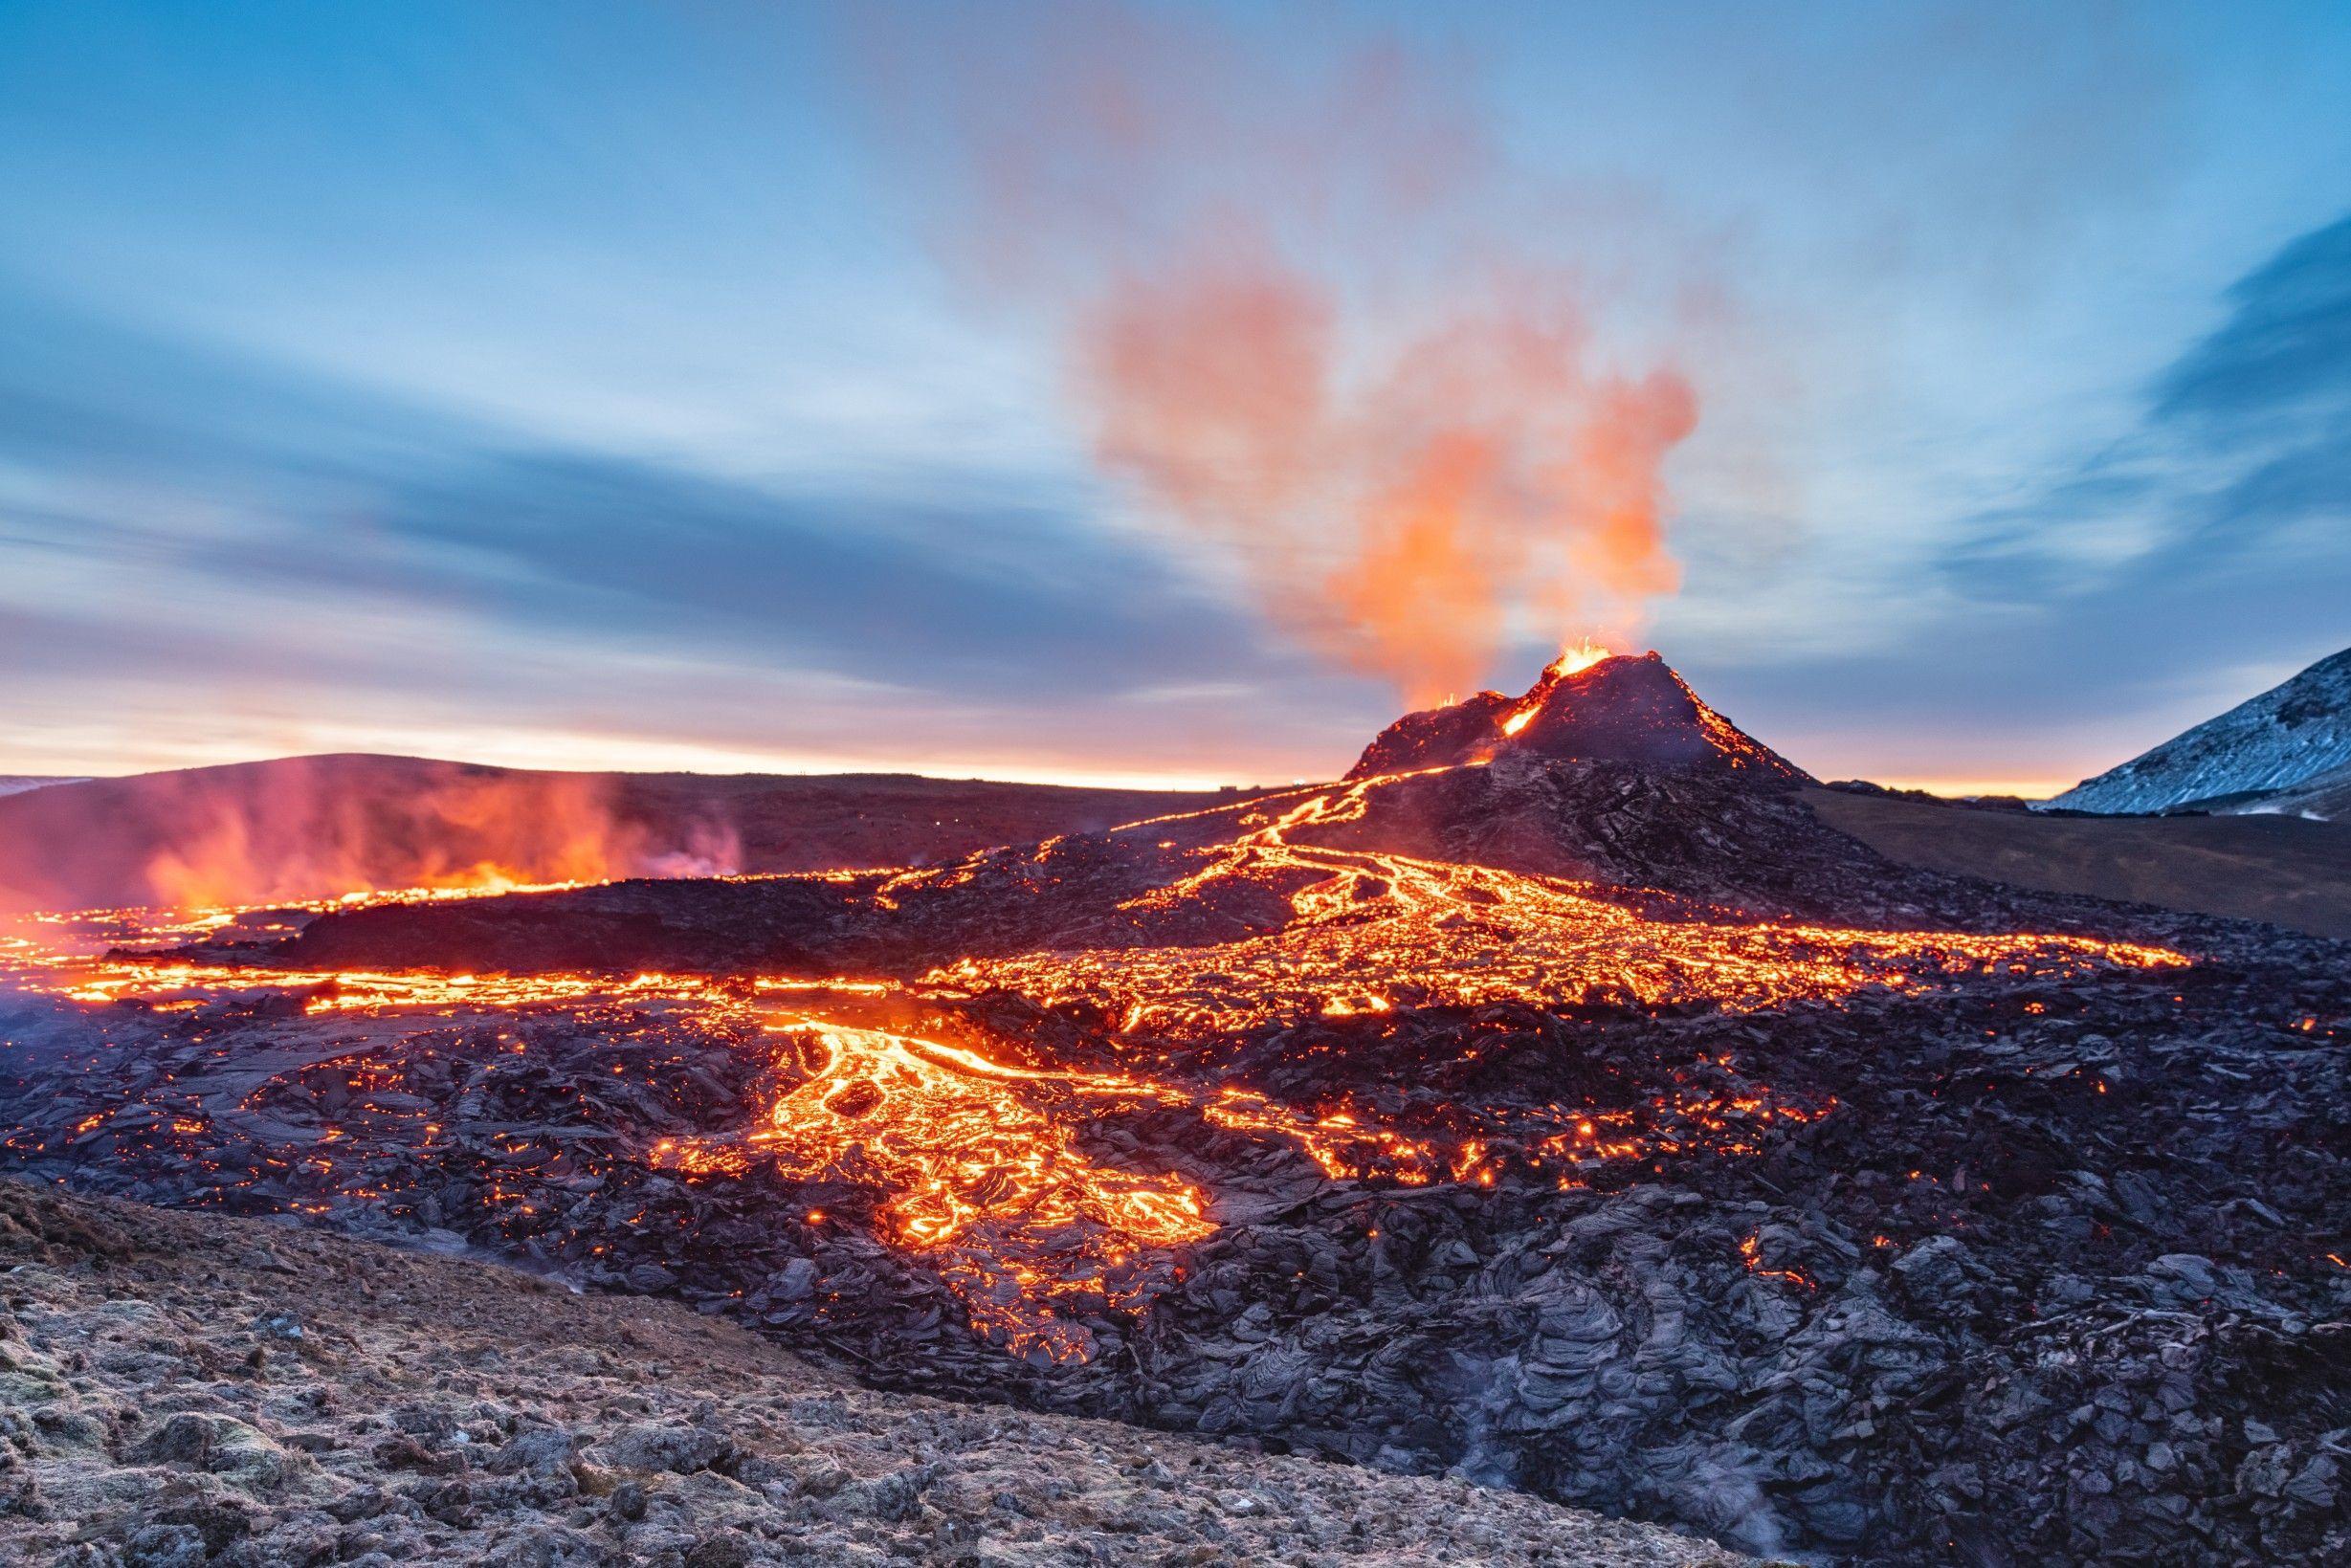 Volcanic eruption sparks devastating fires in Icelandic fishing village